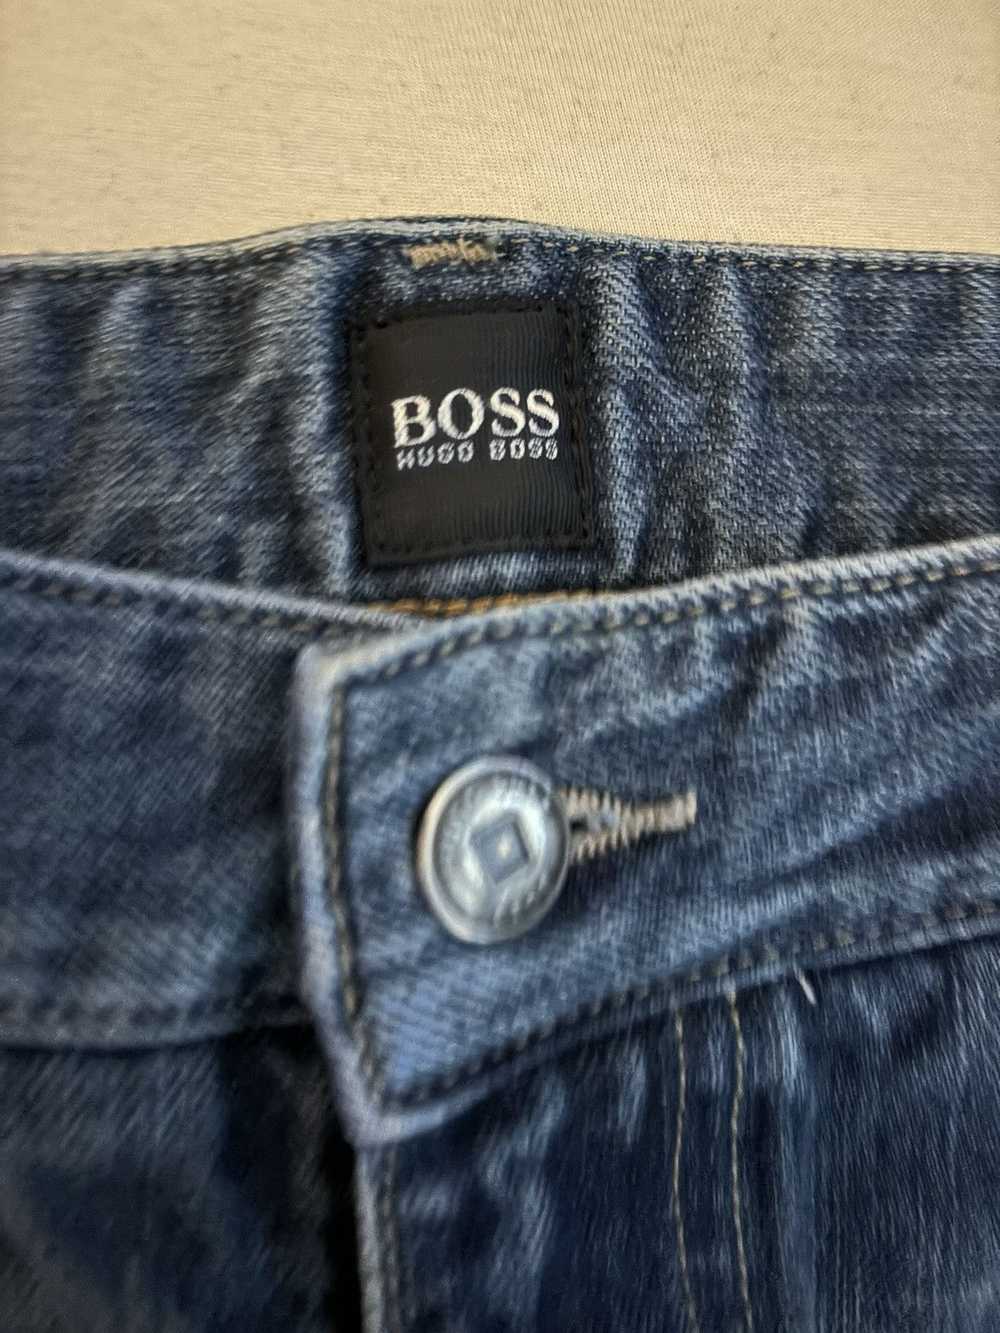 Hugo Boss Hugo boss blue jeans size 36 - image 4